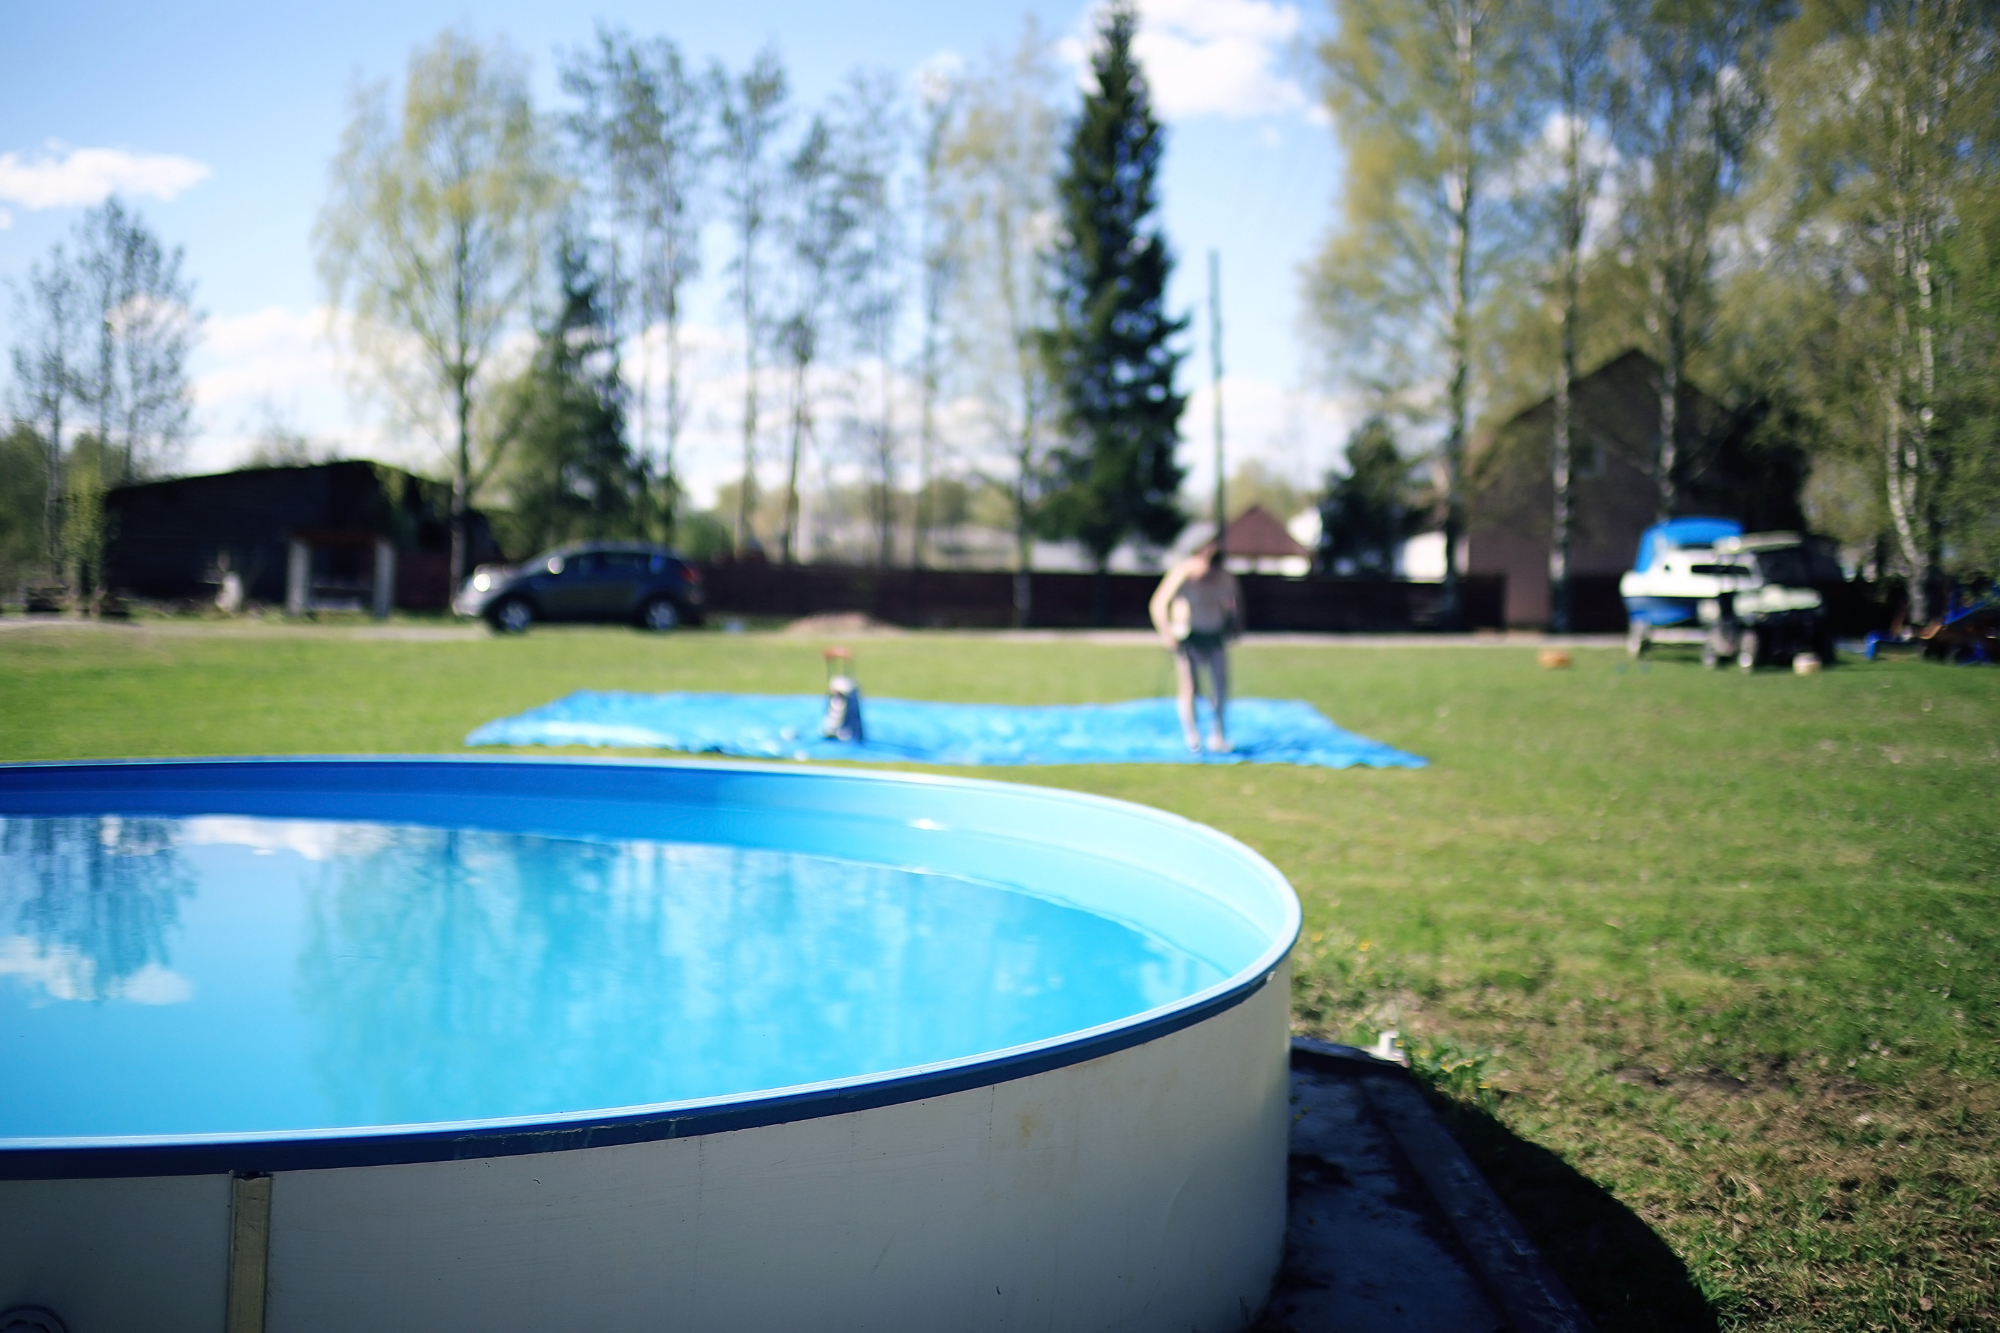 Med poletnimi meseci so bazeni odlična izbira